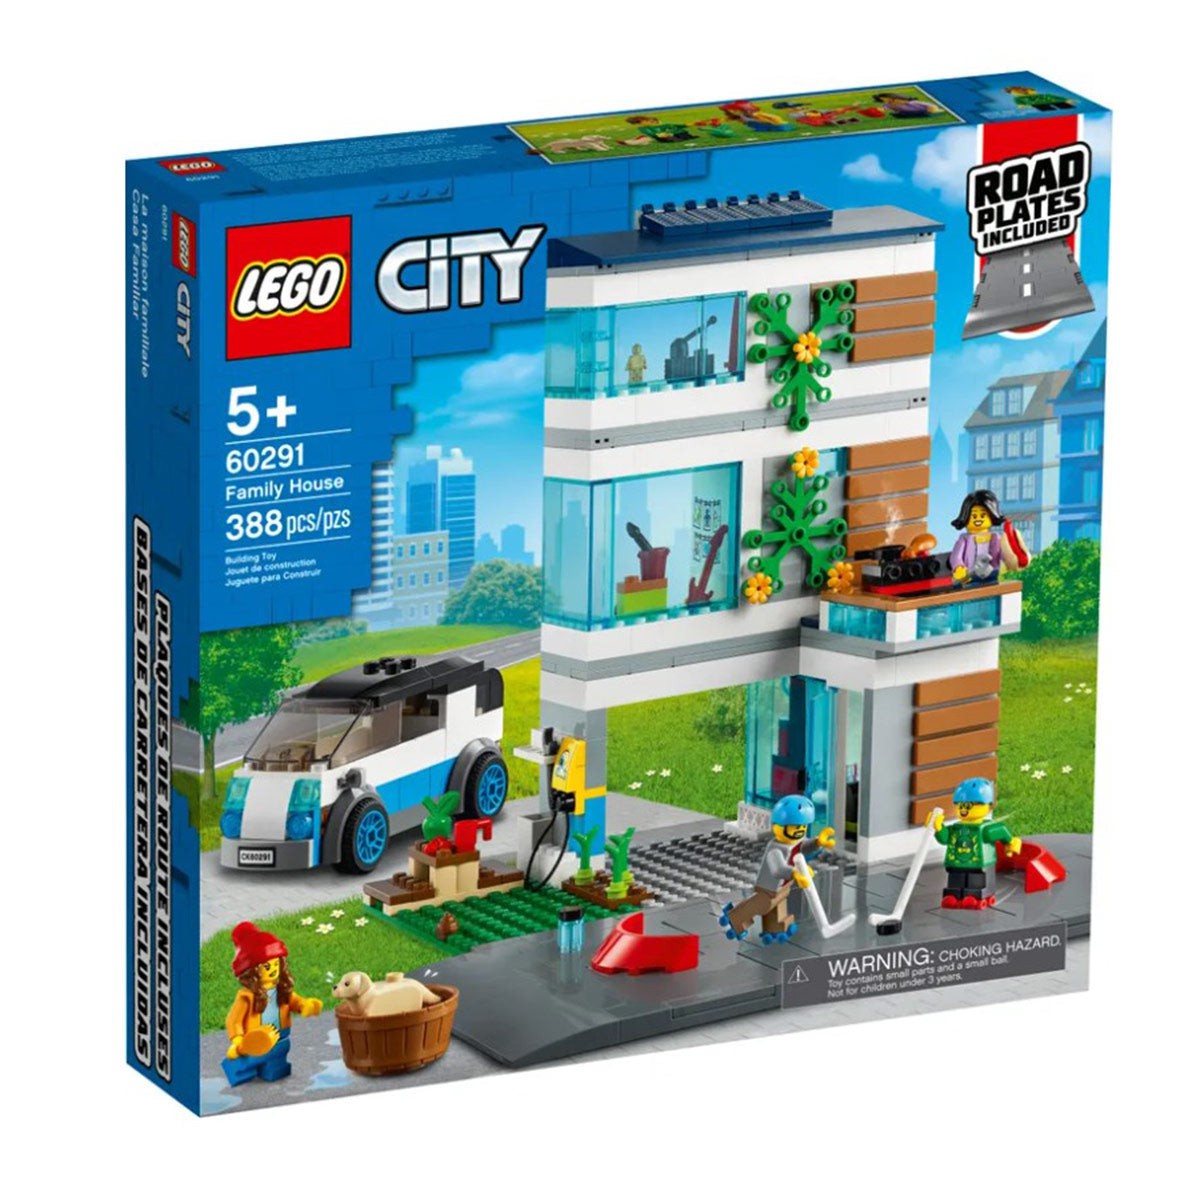 60304 - LEGO® City - Intersection à assembler